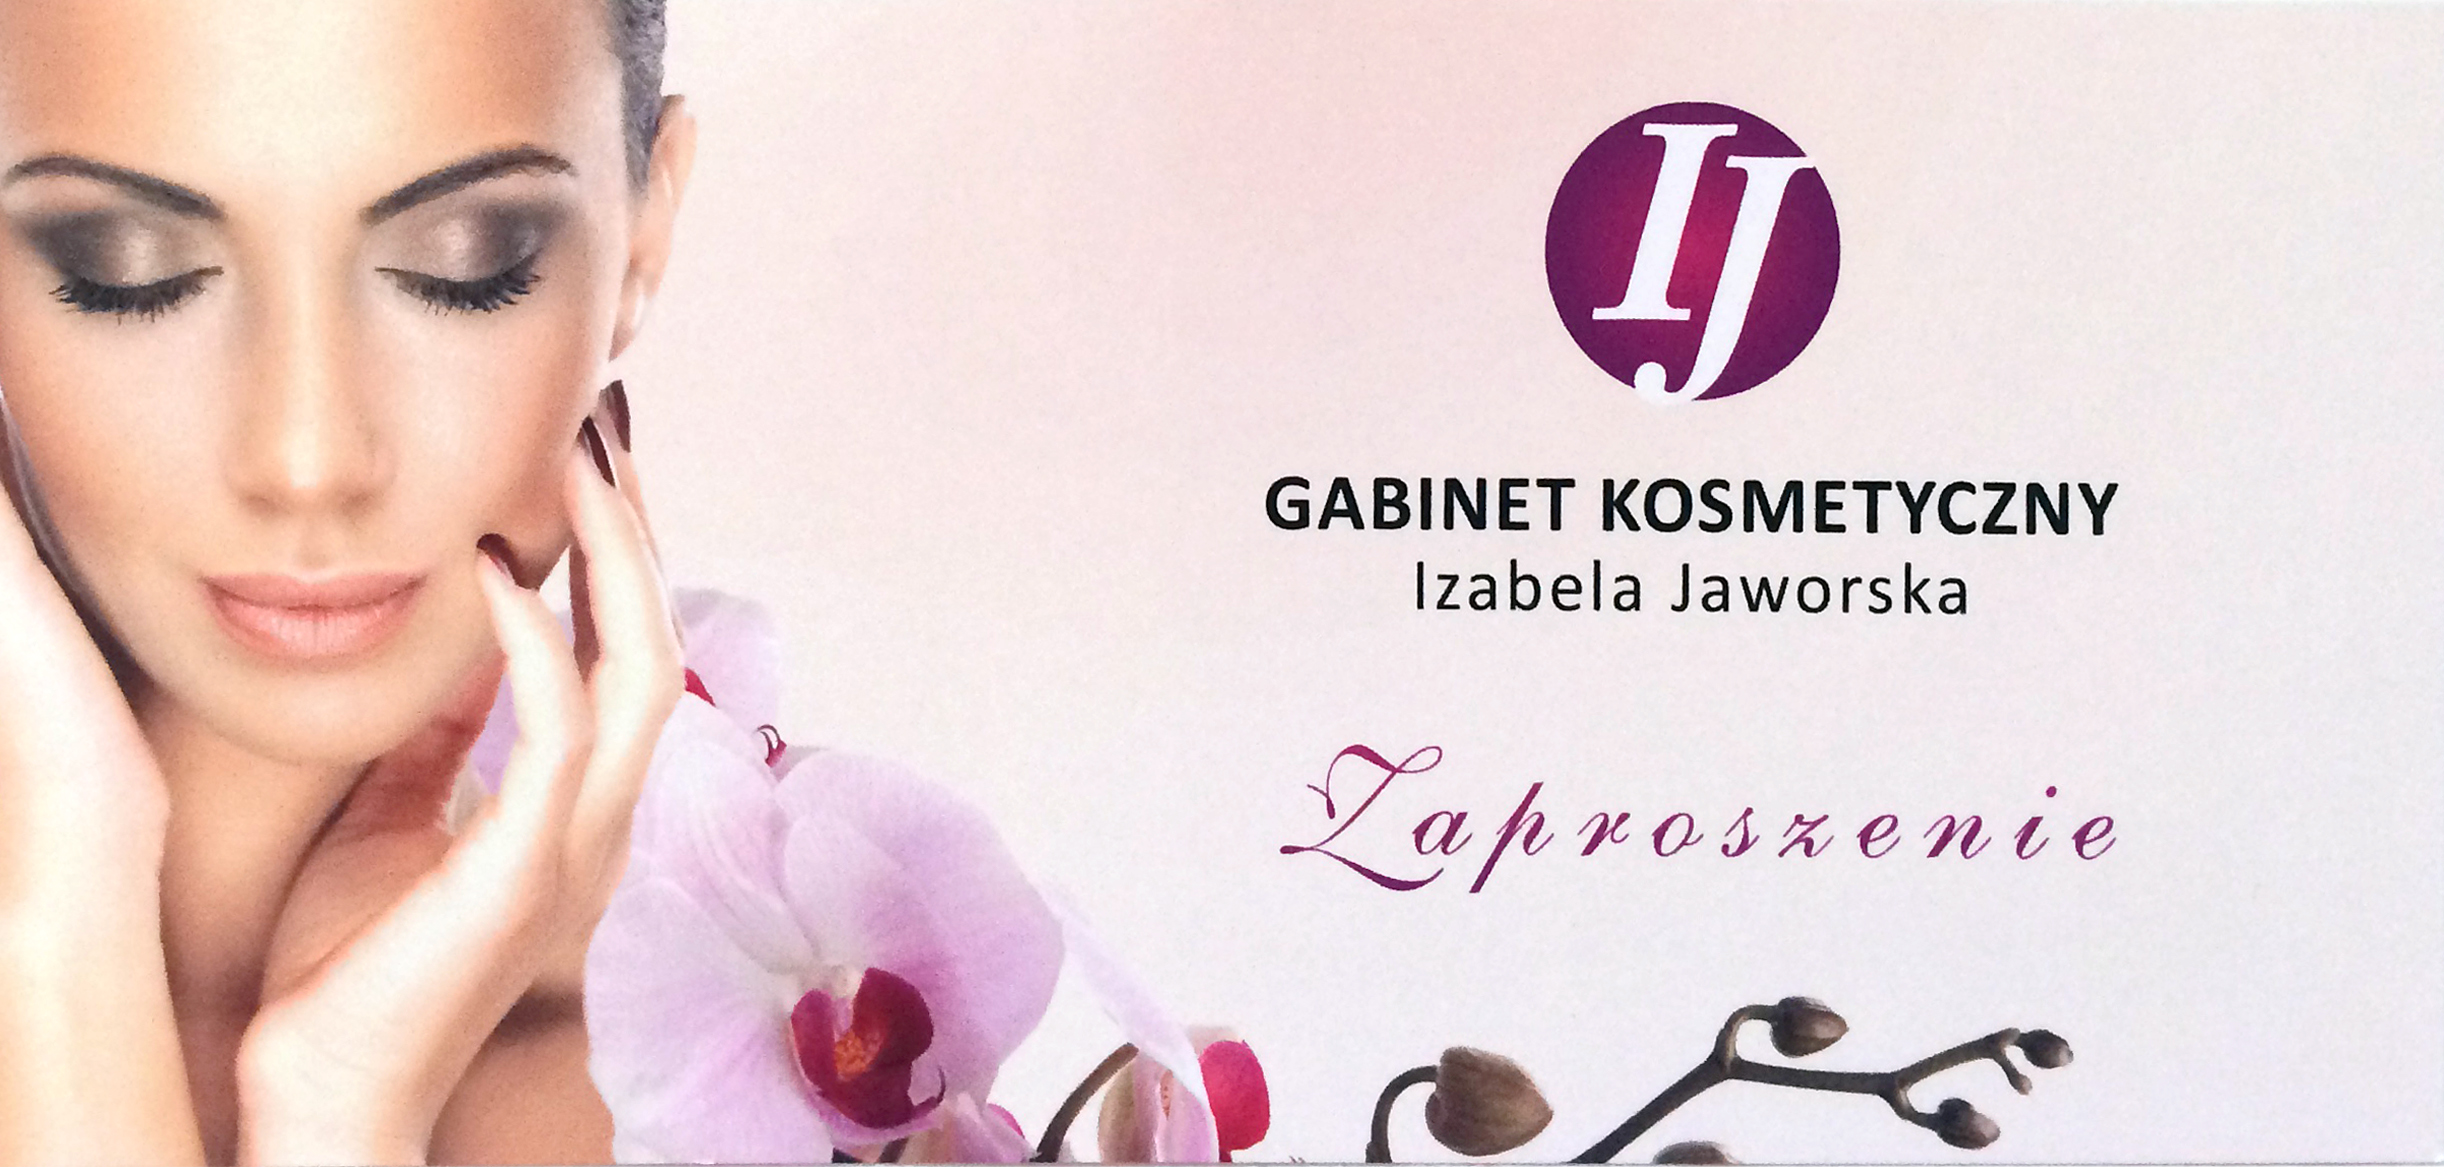 voucher zabiegi kosmetyczne Gabinet Kosmetyczny Izabela Jaworska